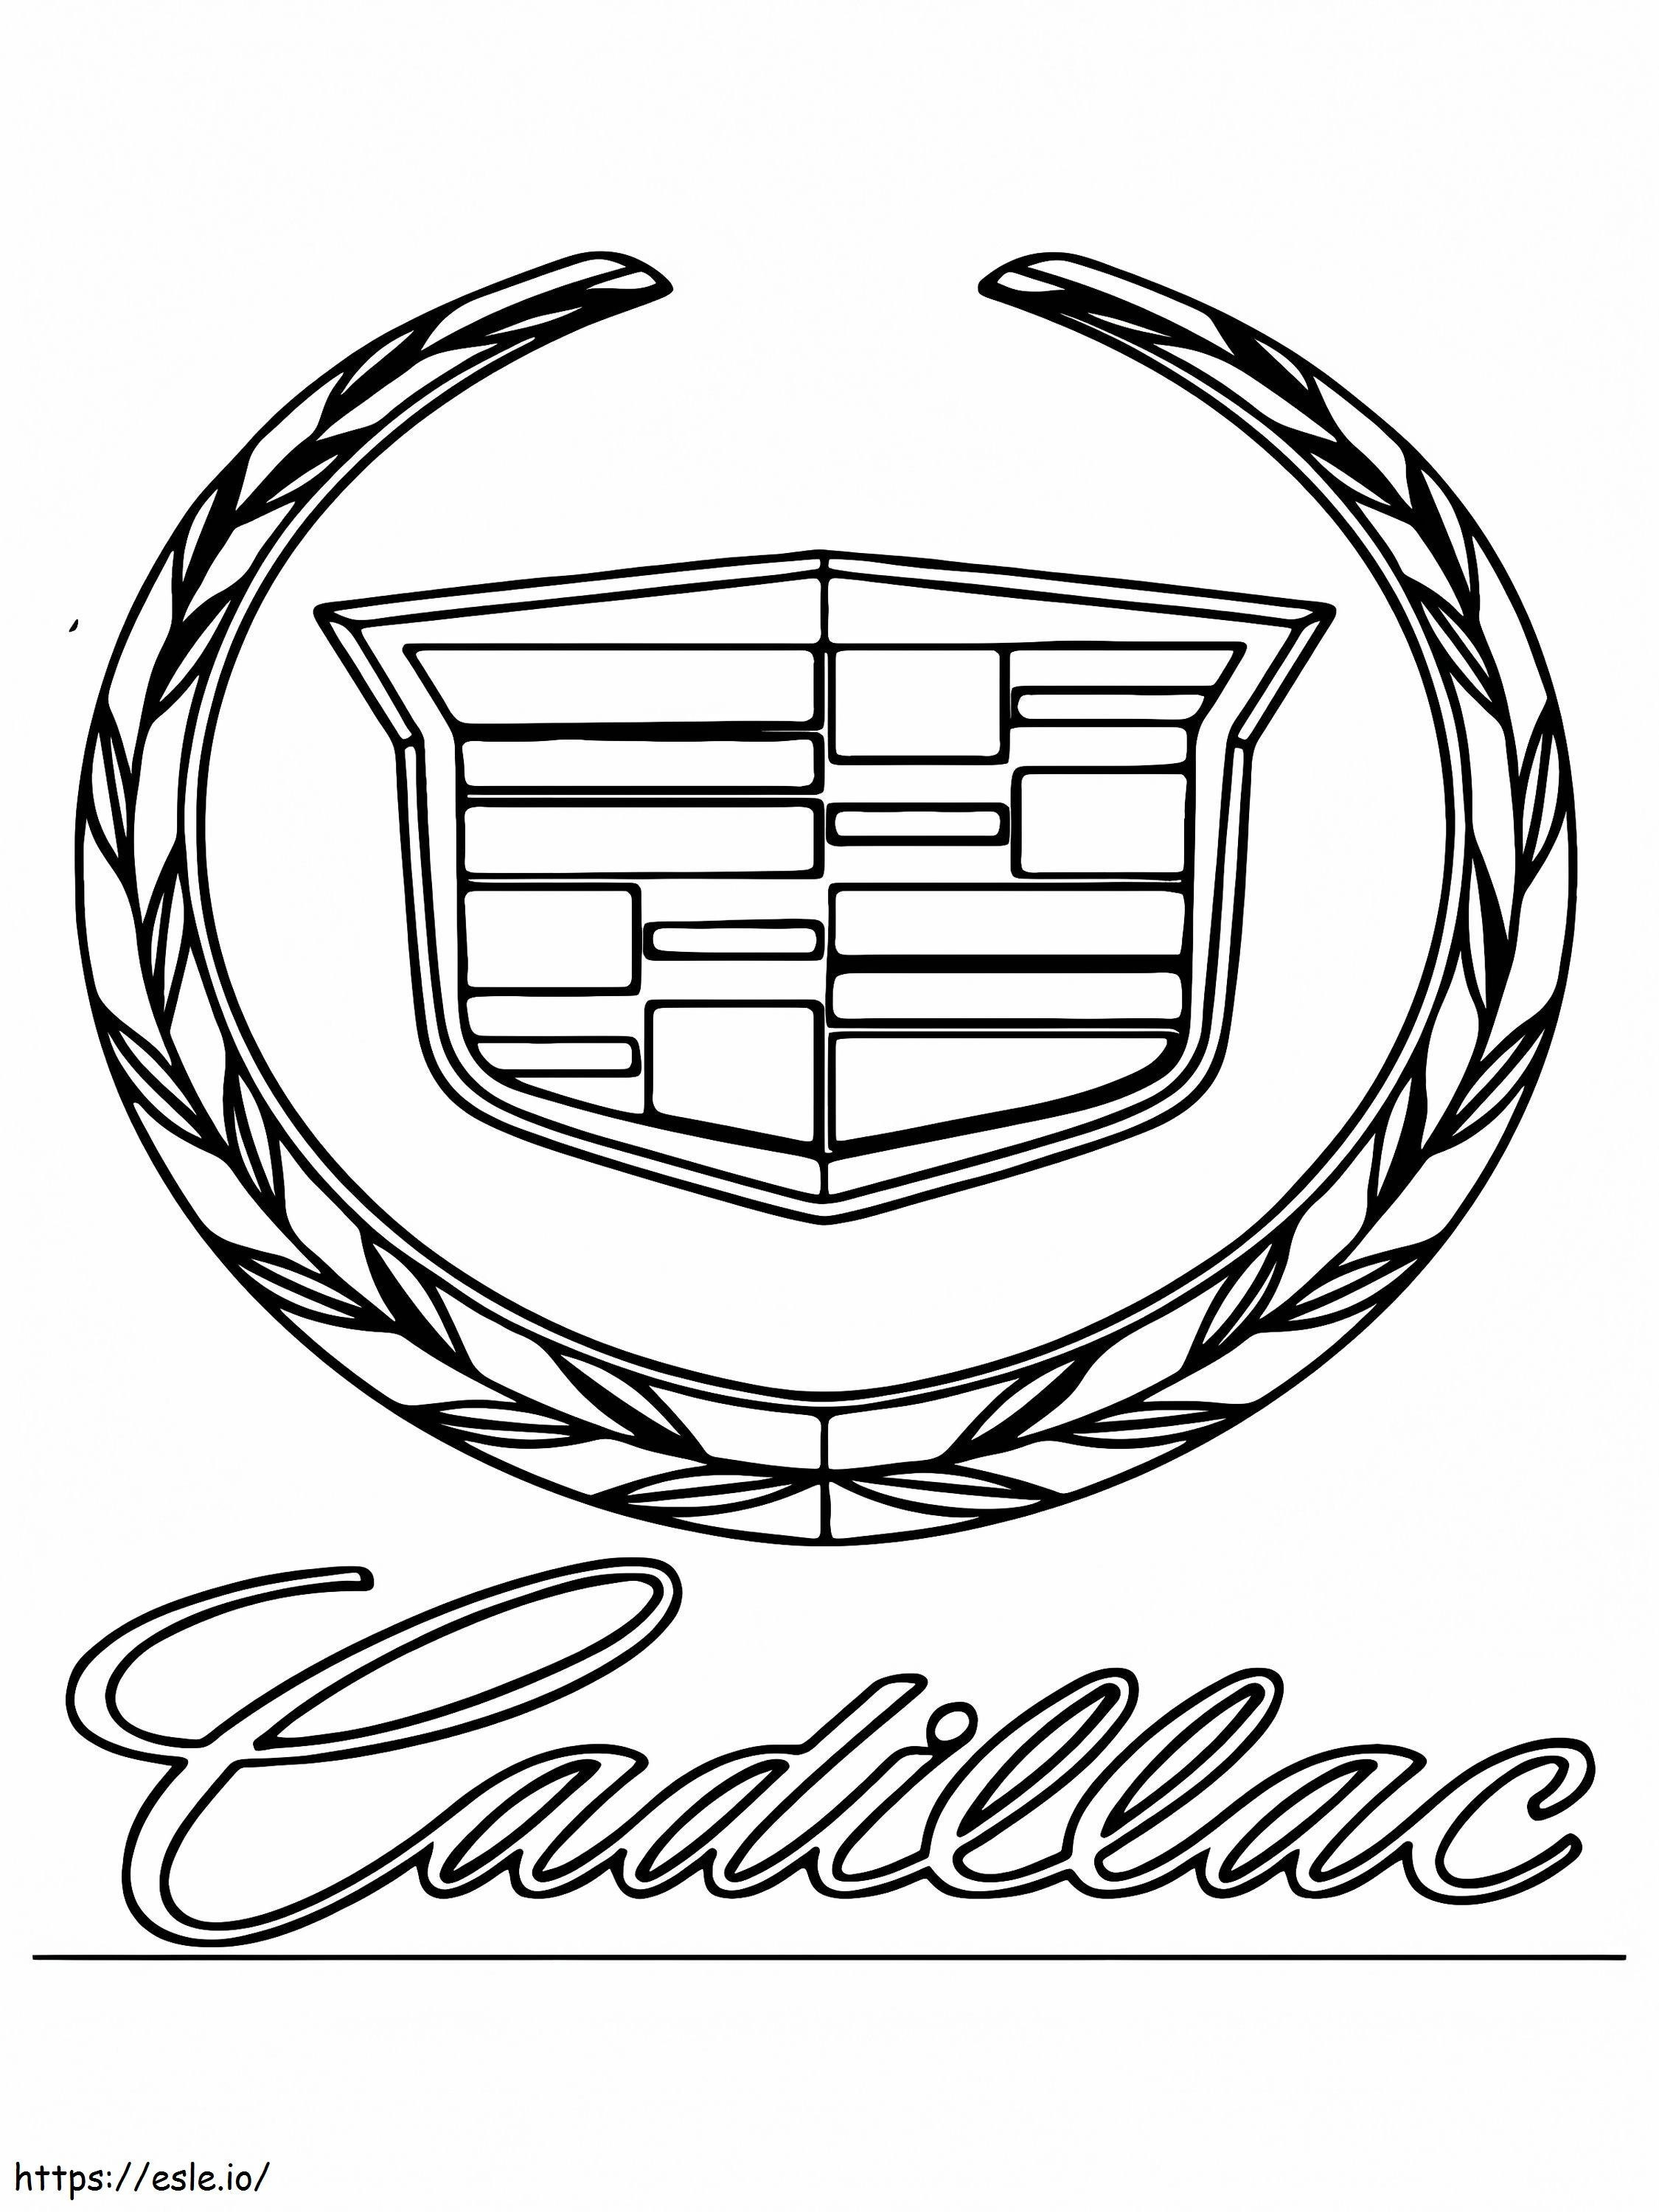 Cadillac-Auto-Logo ausmalbilder